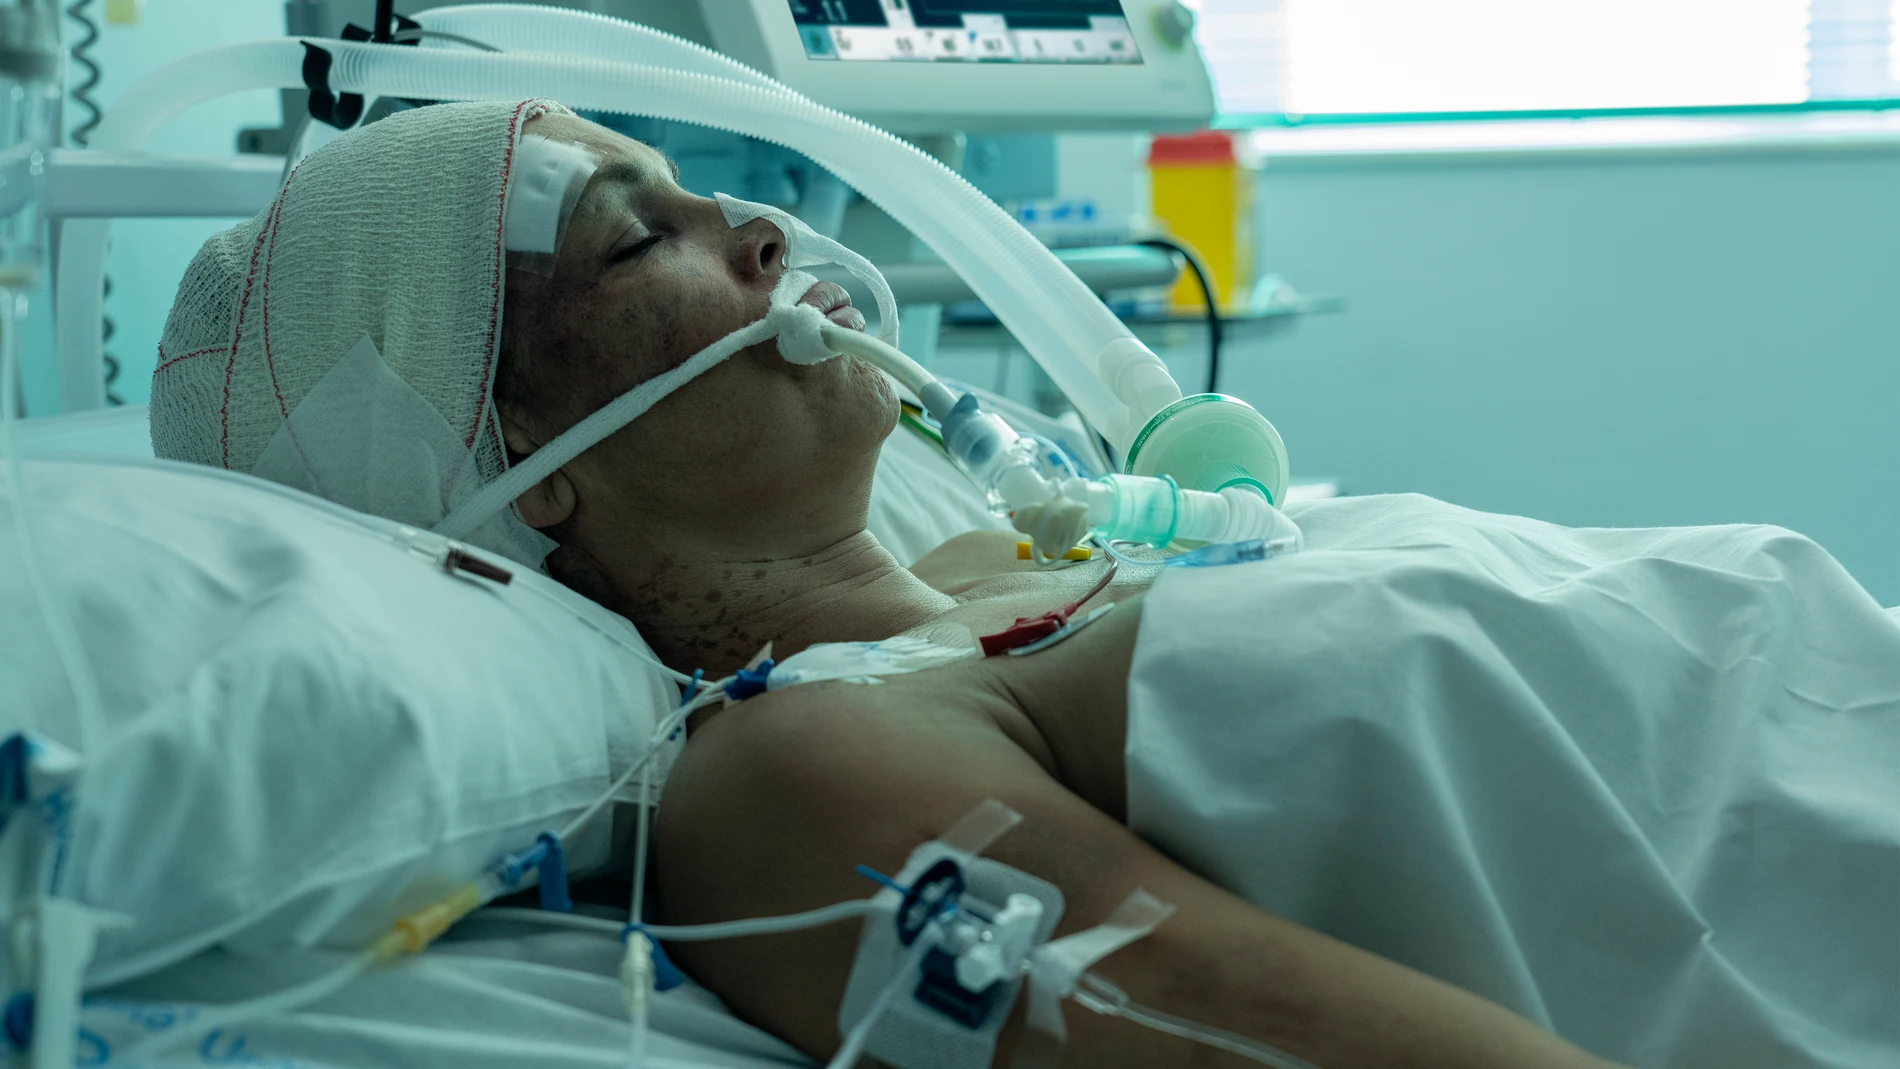 El último capítulo narra el extraño accidente que sufre Cristina Ortiz y que acaba en coma